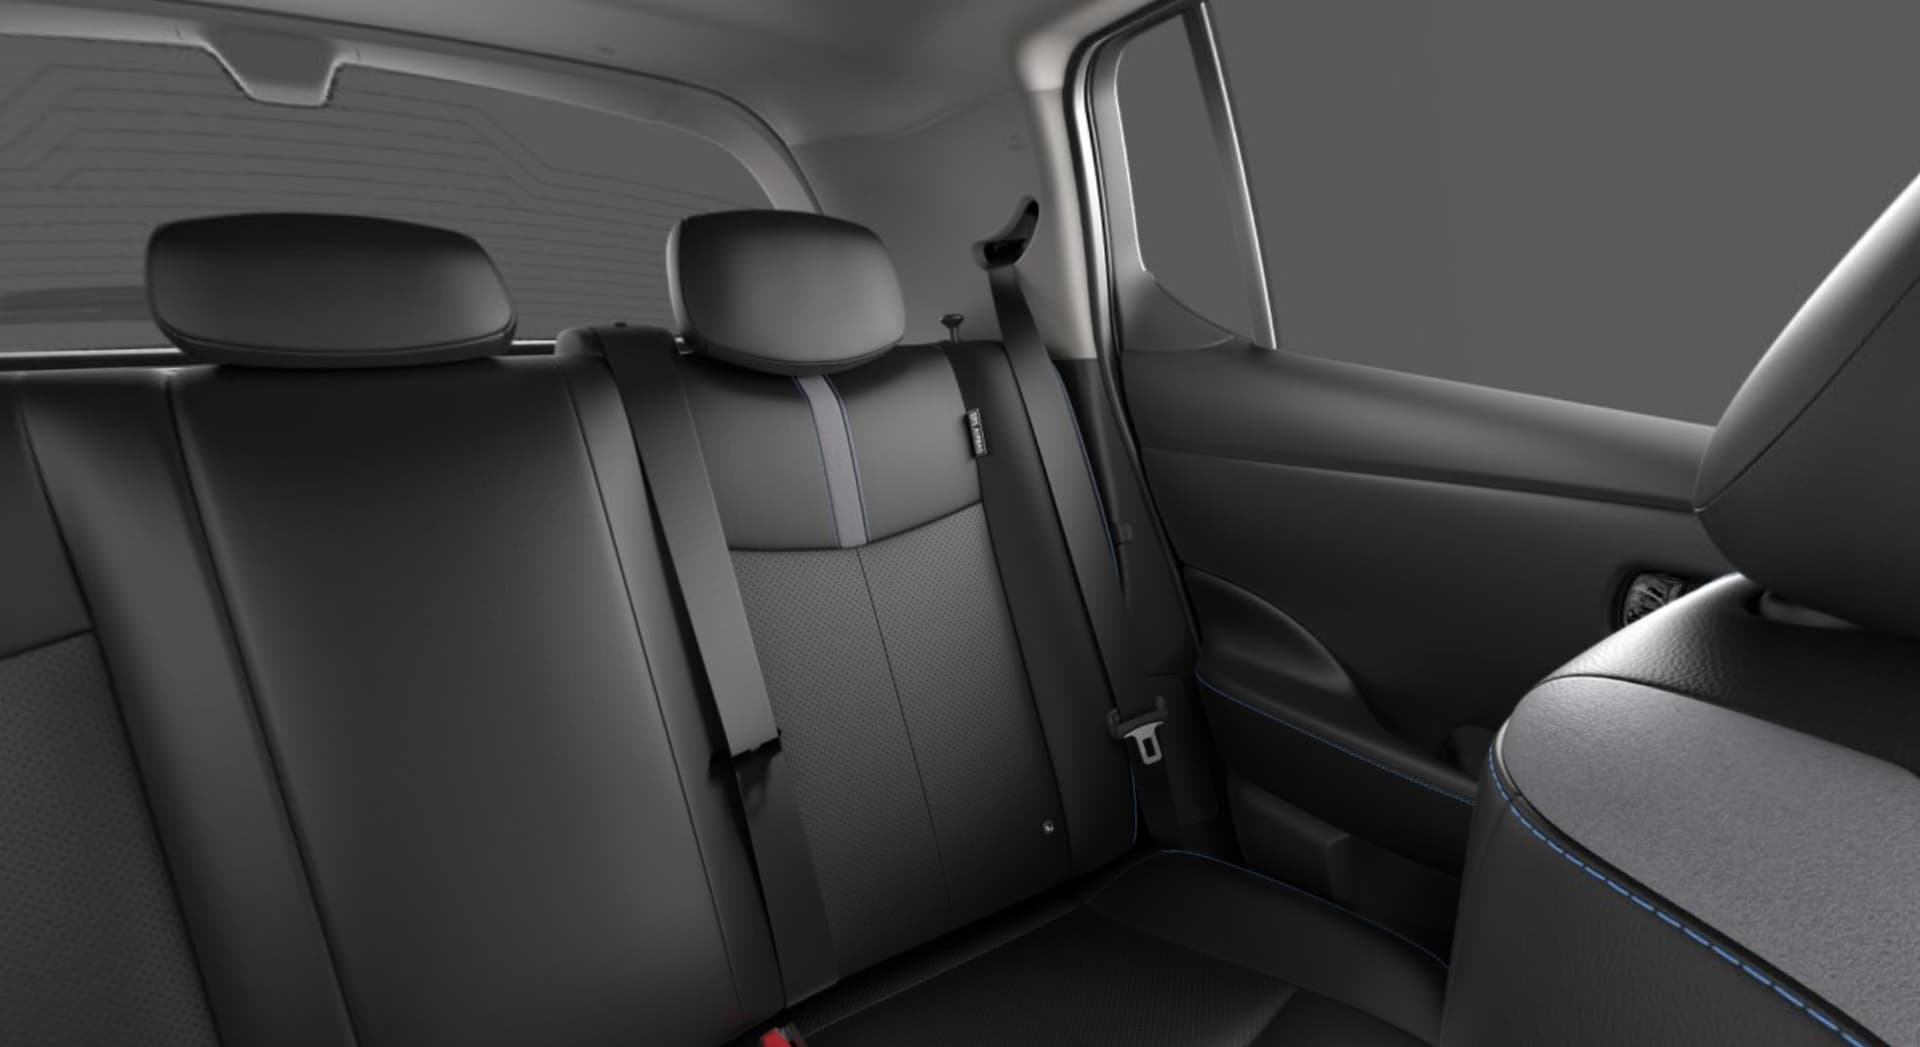 2023 Nissan Leaf e+ exterior and interior